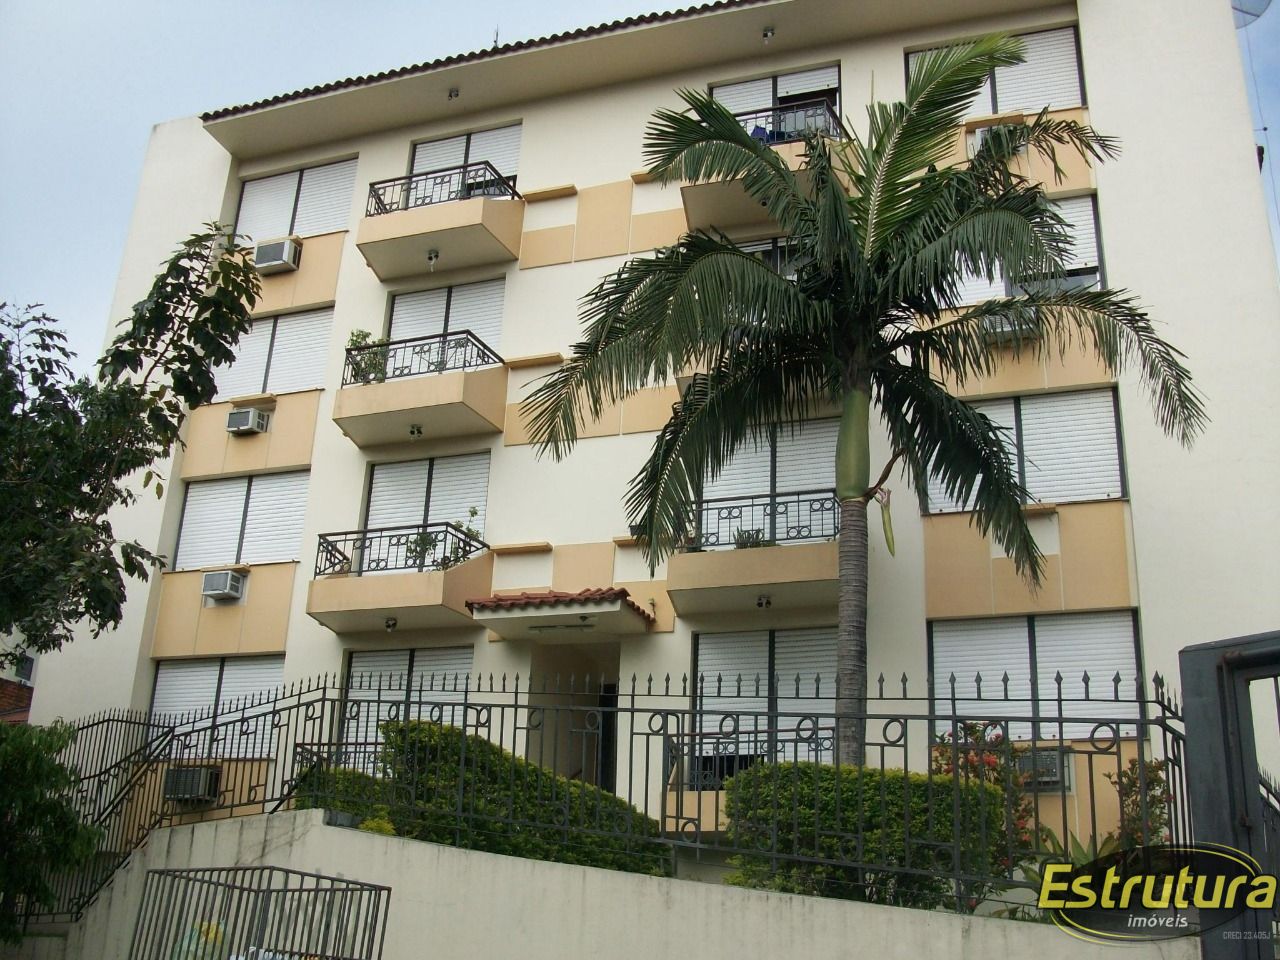 Apartamento com 3 Dormitórios à venda, 110 m² por R$ 437.000,00